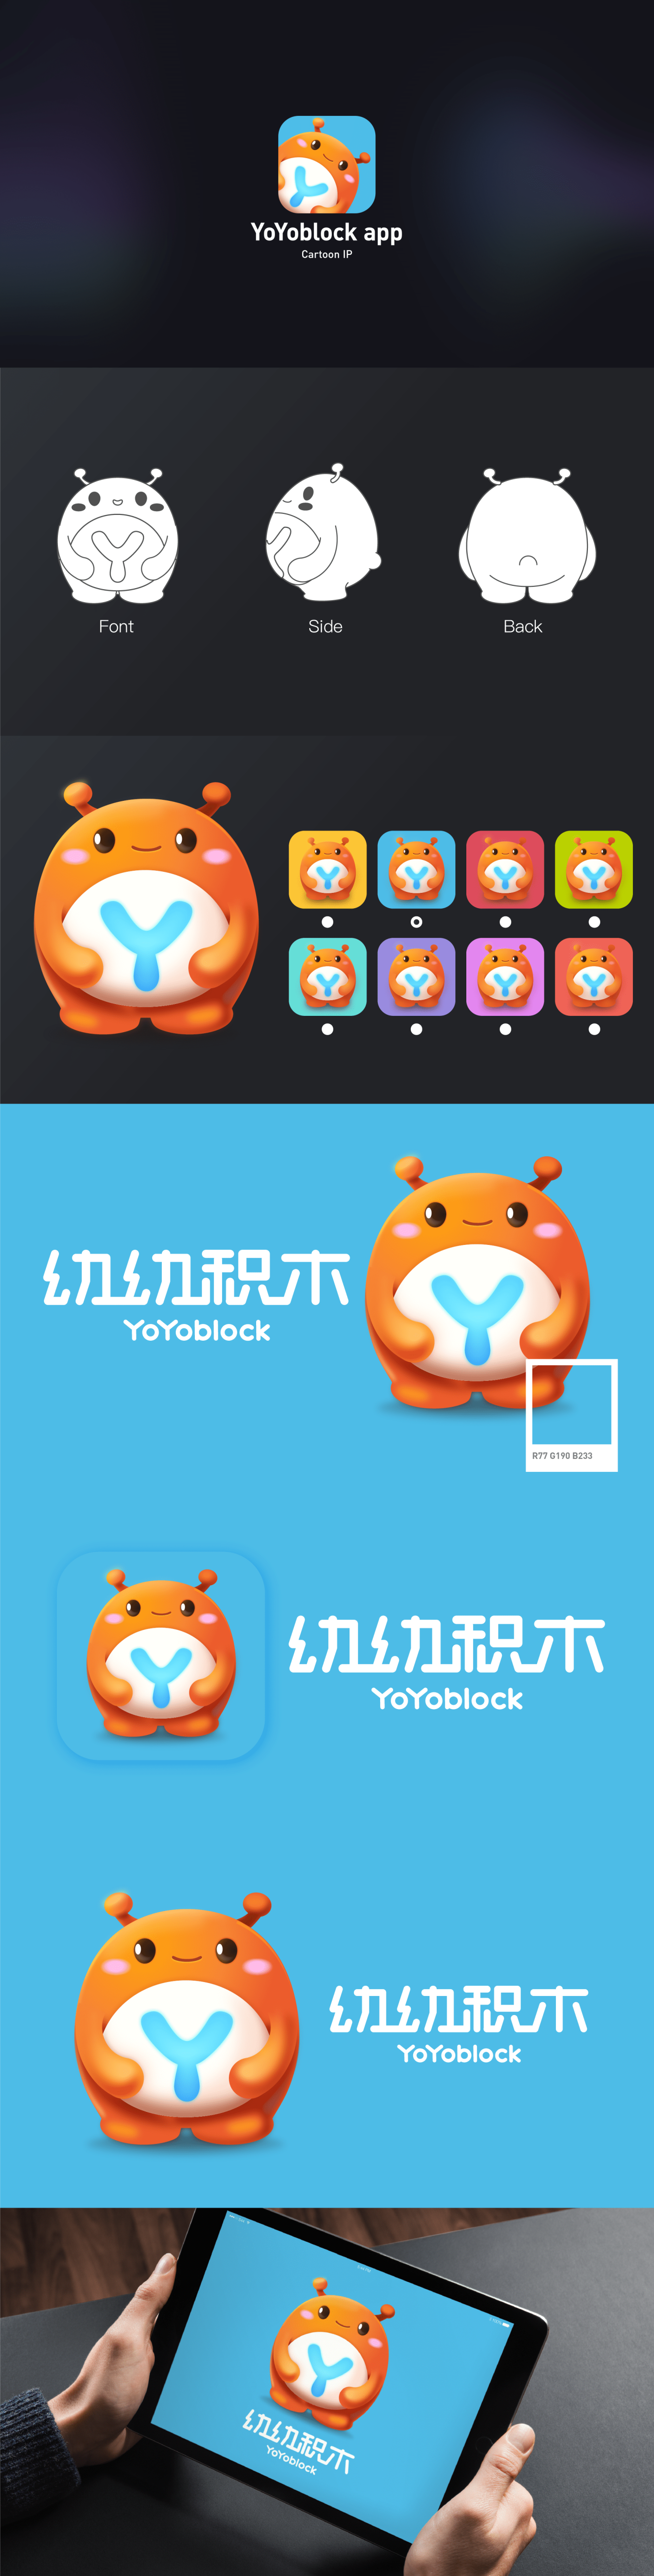 YOYOBLOCK-品牌形象/UI设计图1